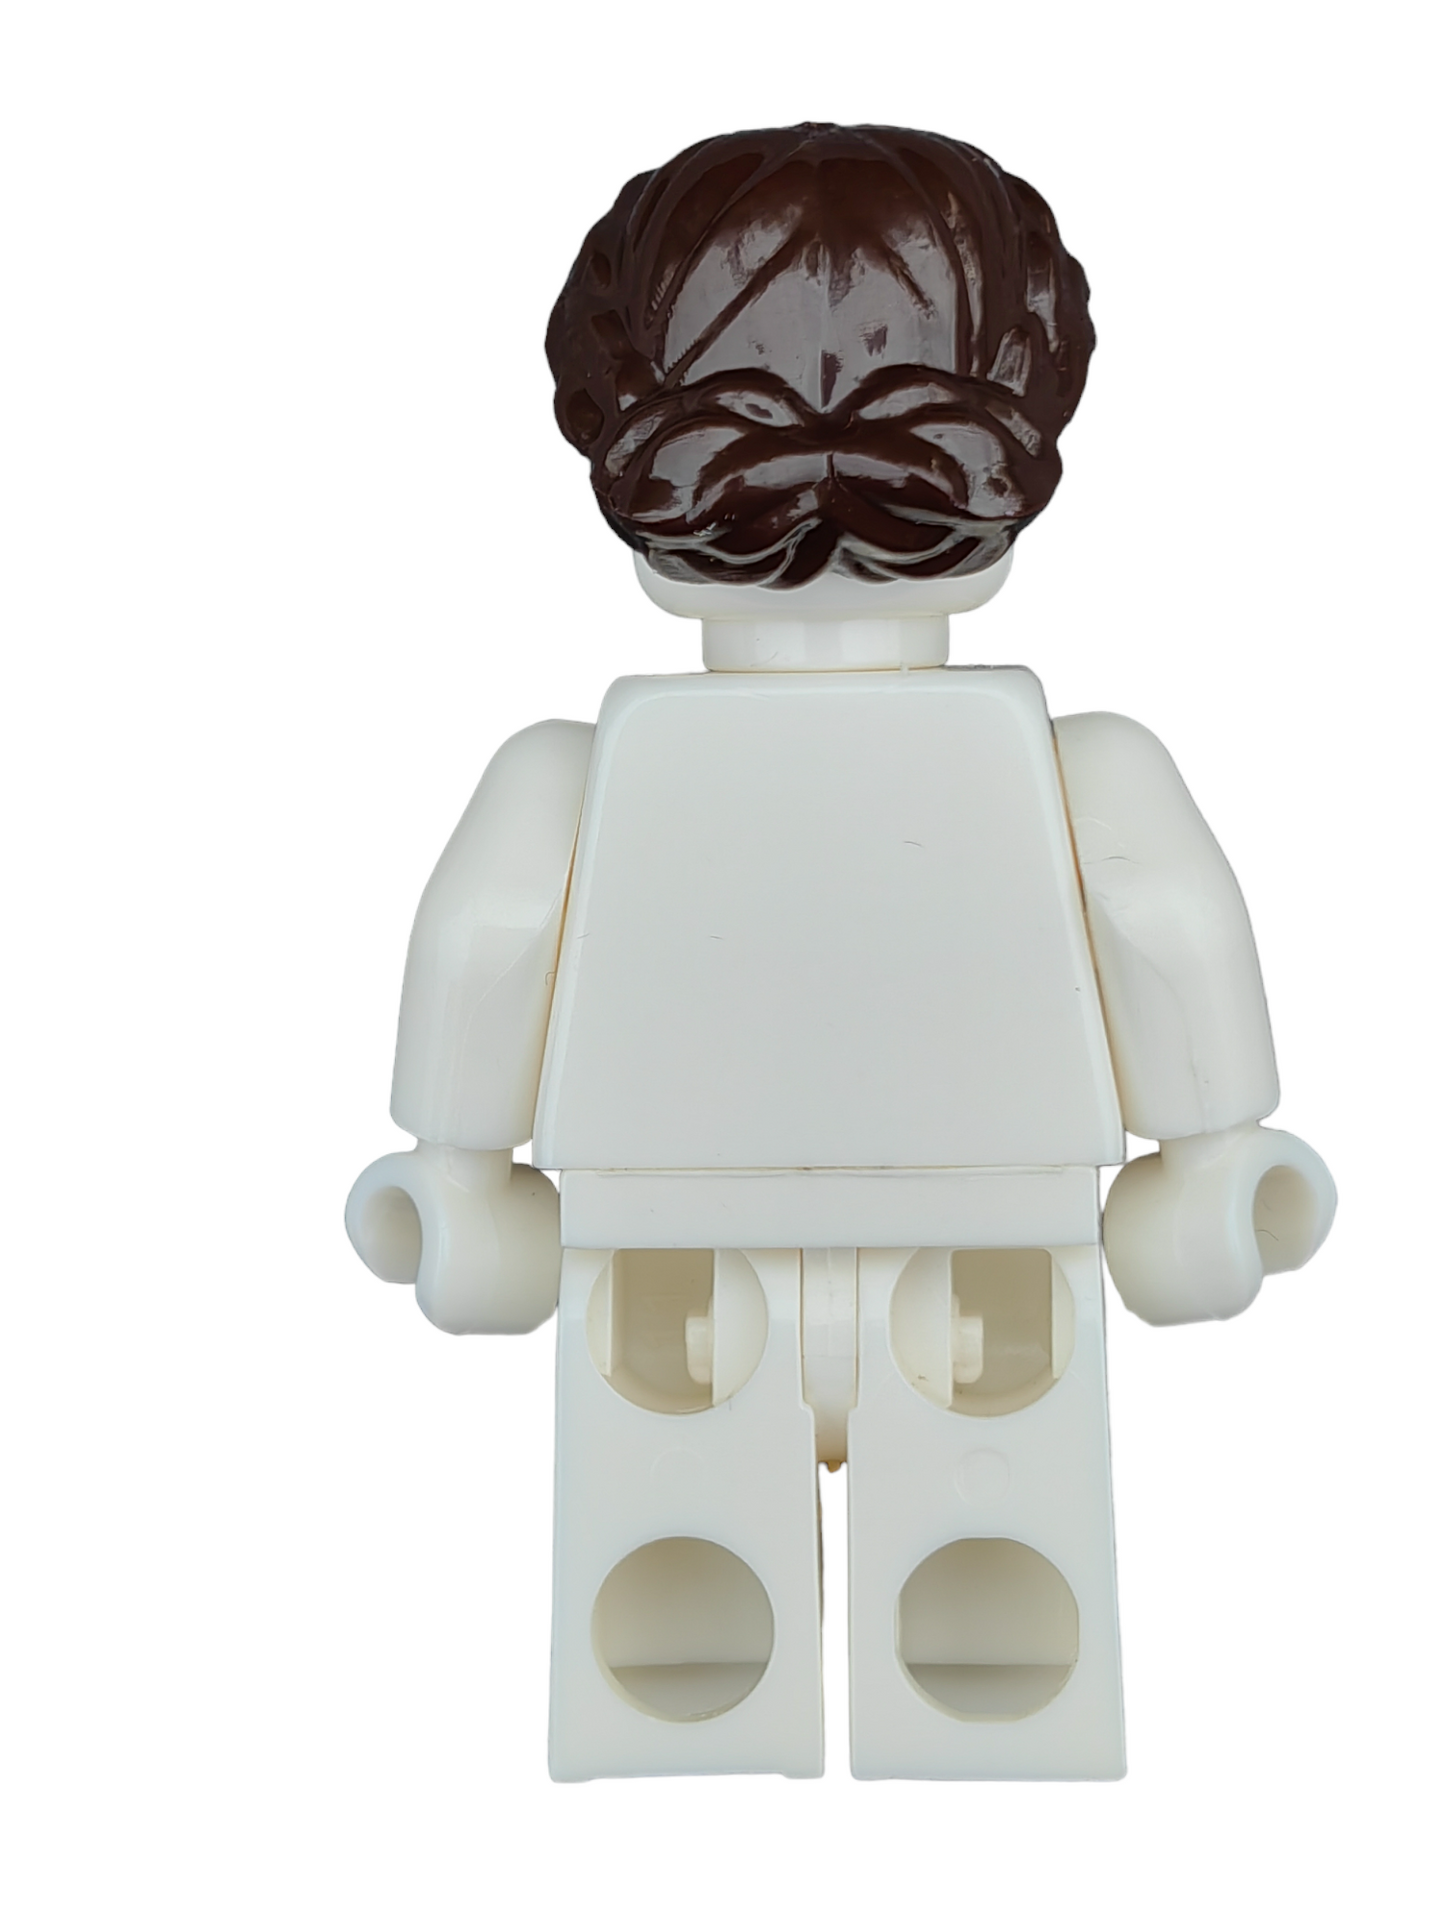 LEGO Wig, Dark Brown Hair Short, Braided on Sides - UB1216